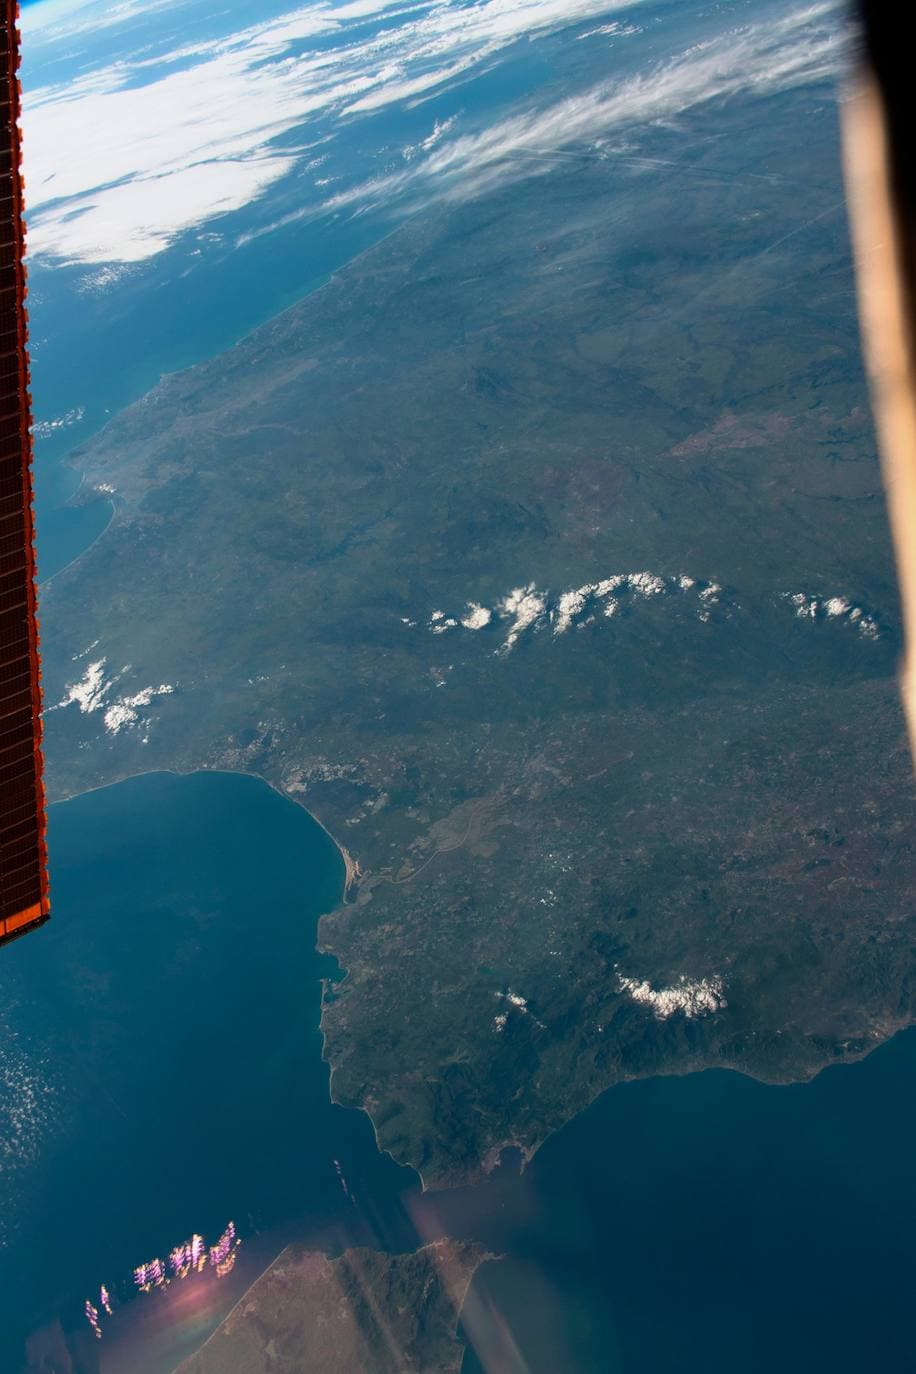 Los astronautas de la Estación Espacial Internacional muestran unas imágenes con detalle excepcional gracias al ángulo oblicuo con el que se tomaron las fotos, que resalta el relieve